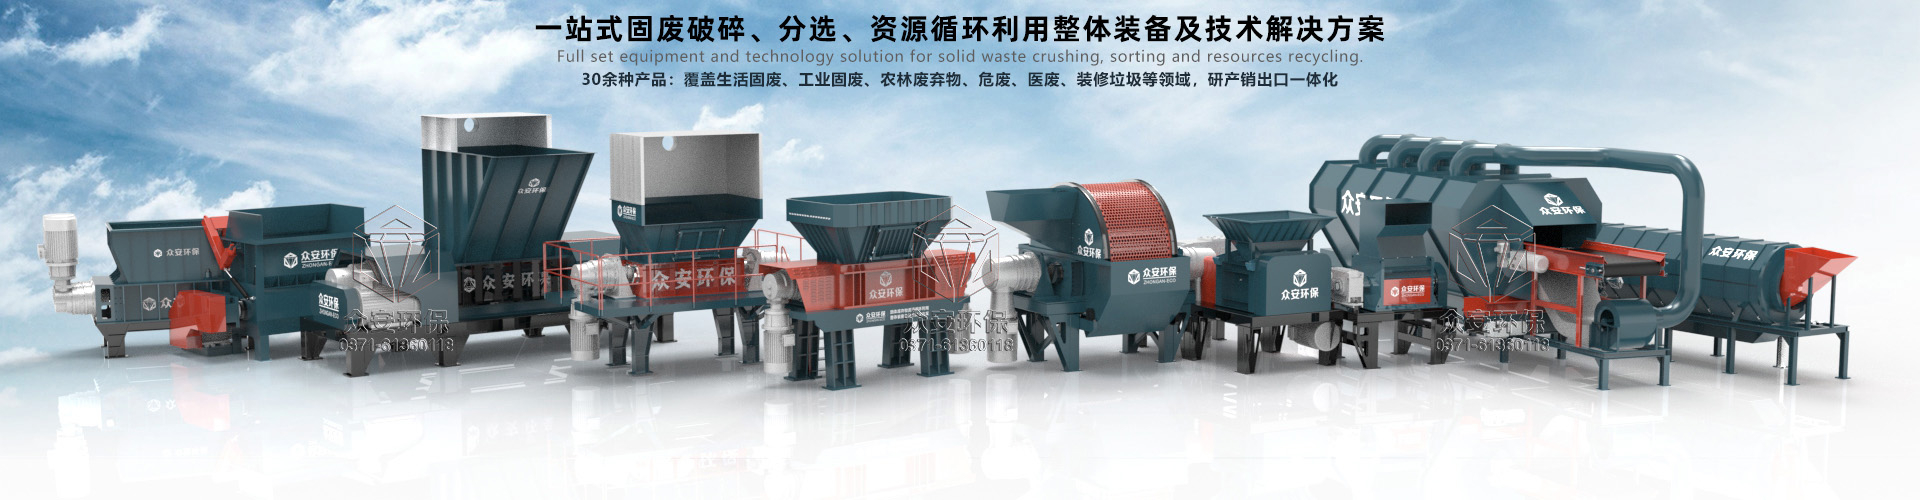 Zhong waste disposal equipment list.jpg